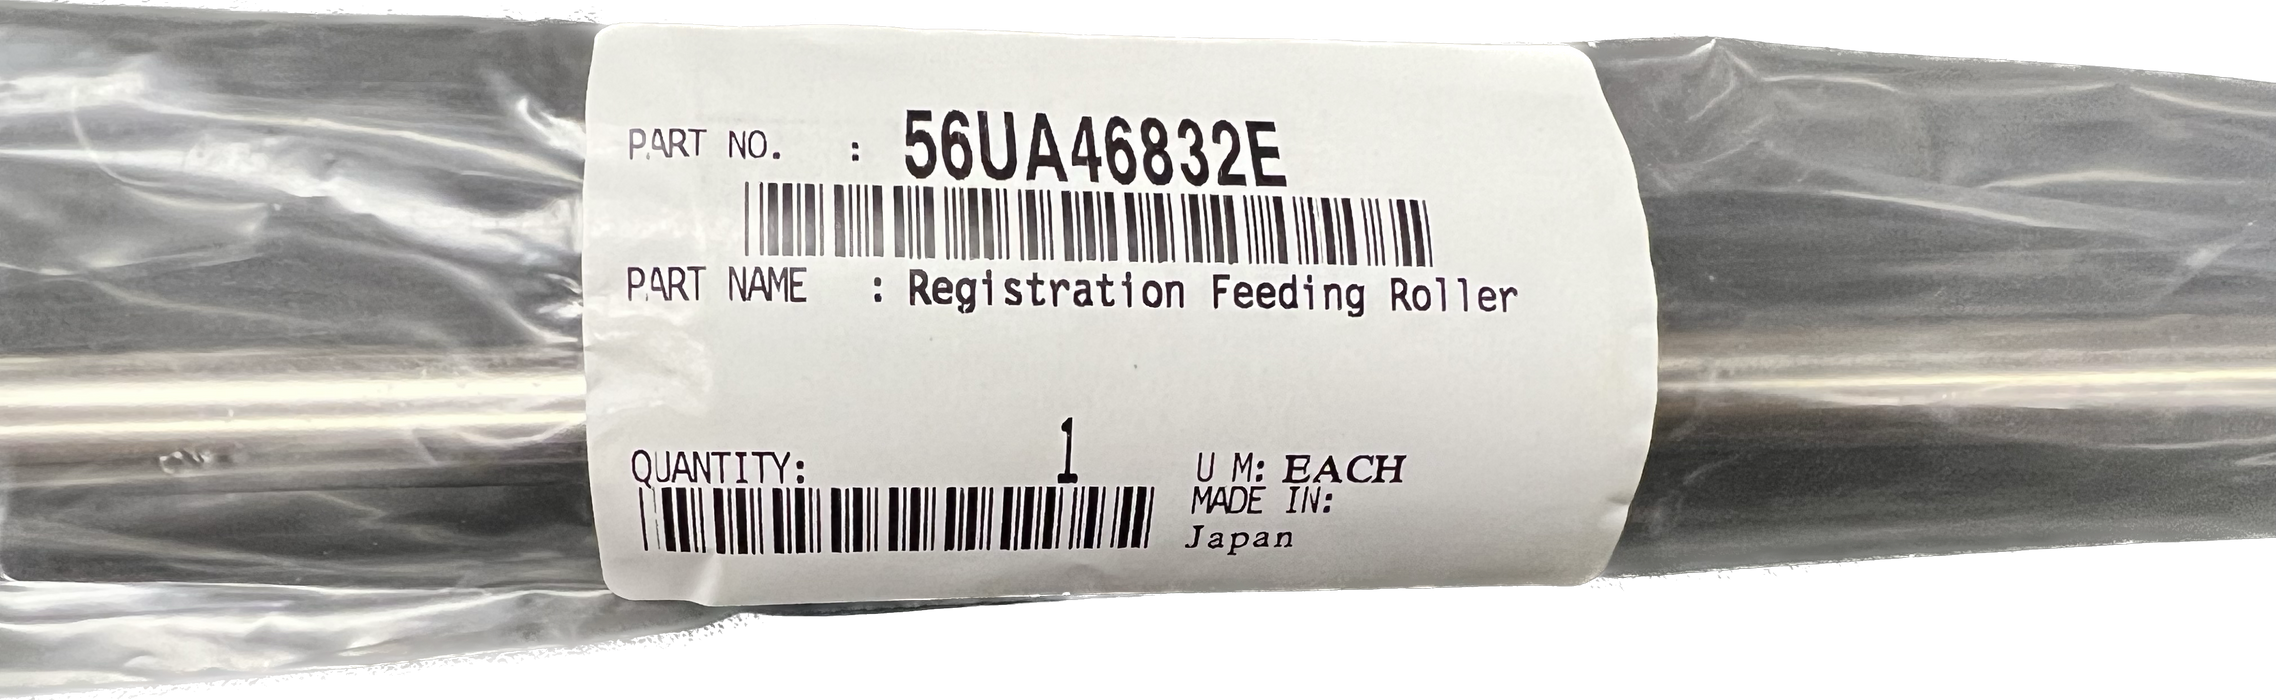 Konica Minolta Registration Feeding Roller | 56UA46832E